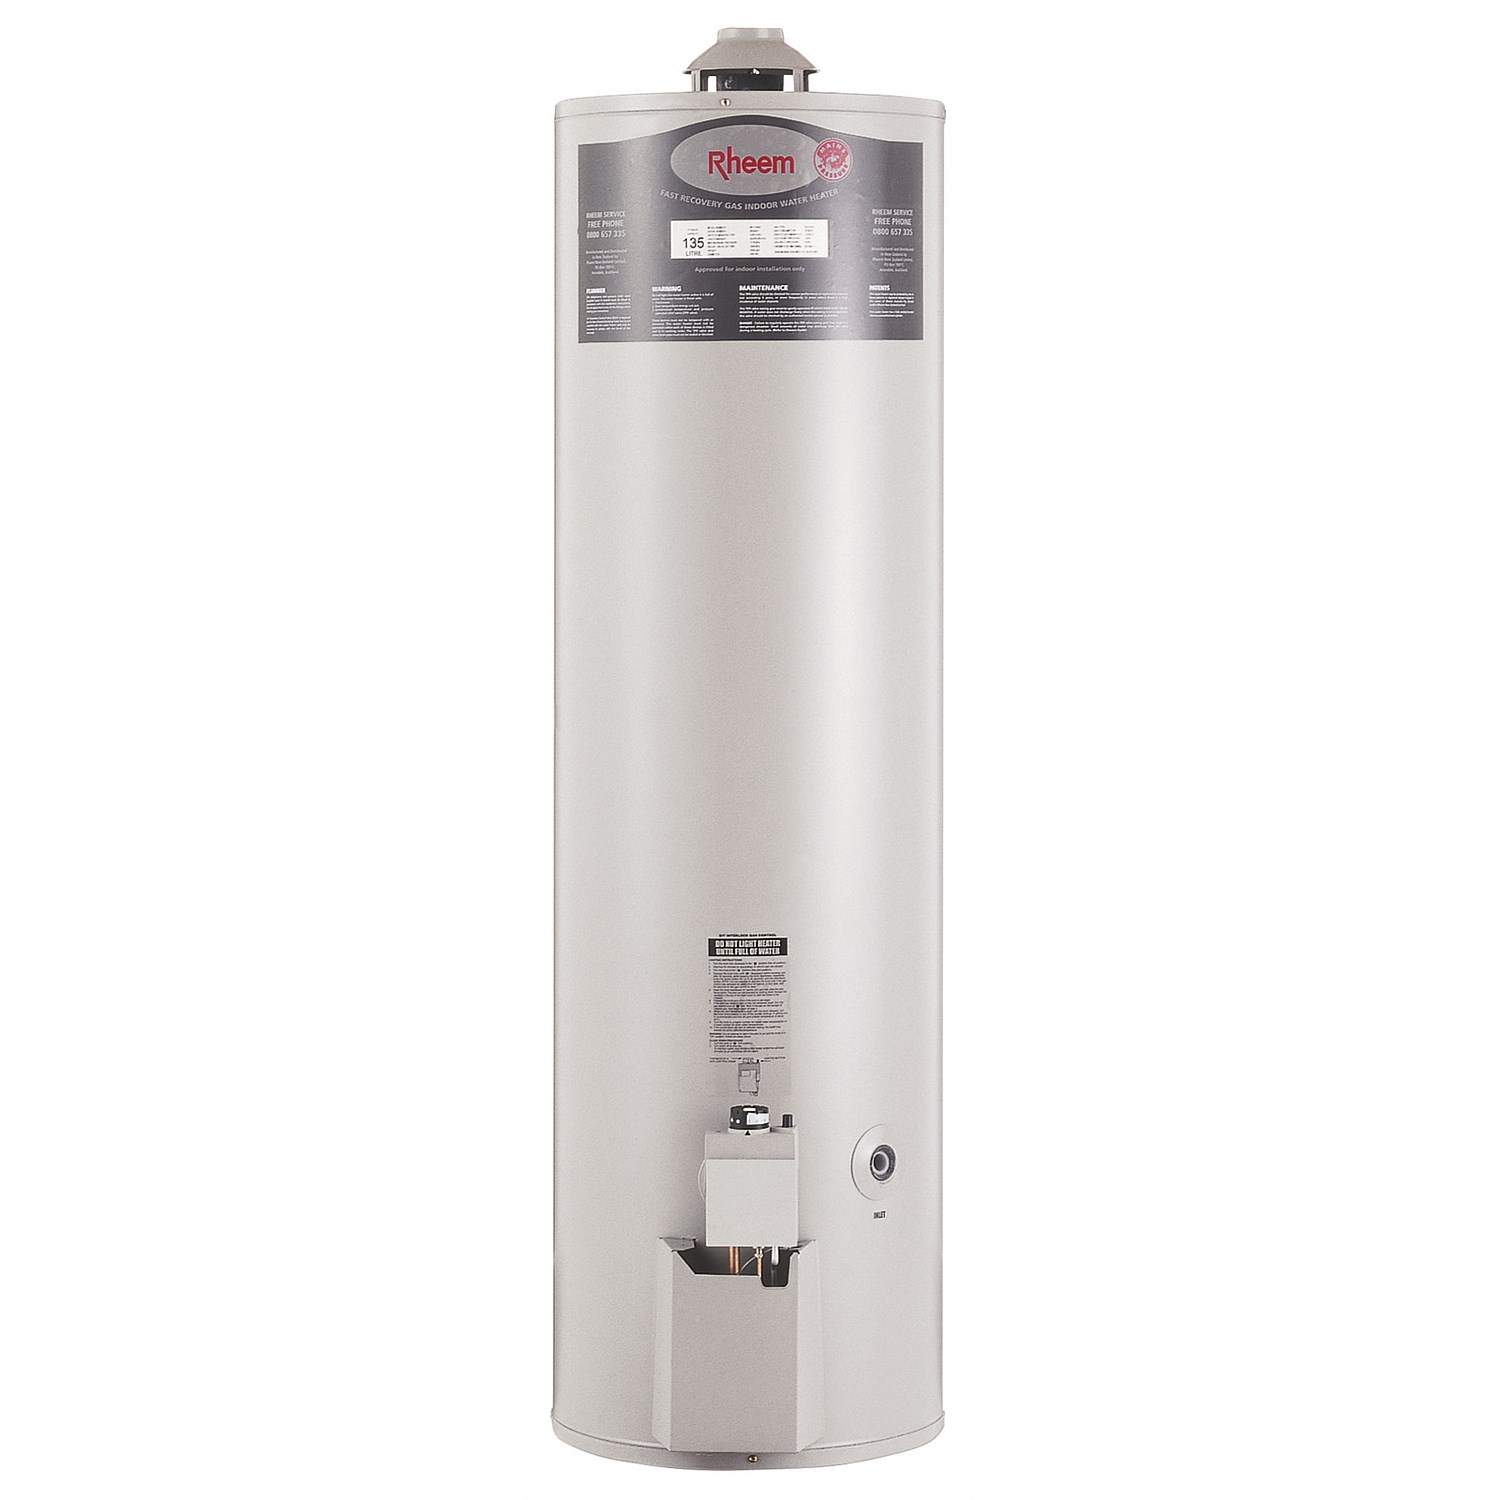 Rheem - Rheem Indoor 160L Gas Storage Water Heater